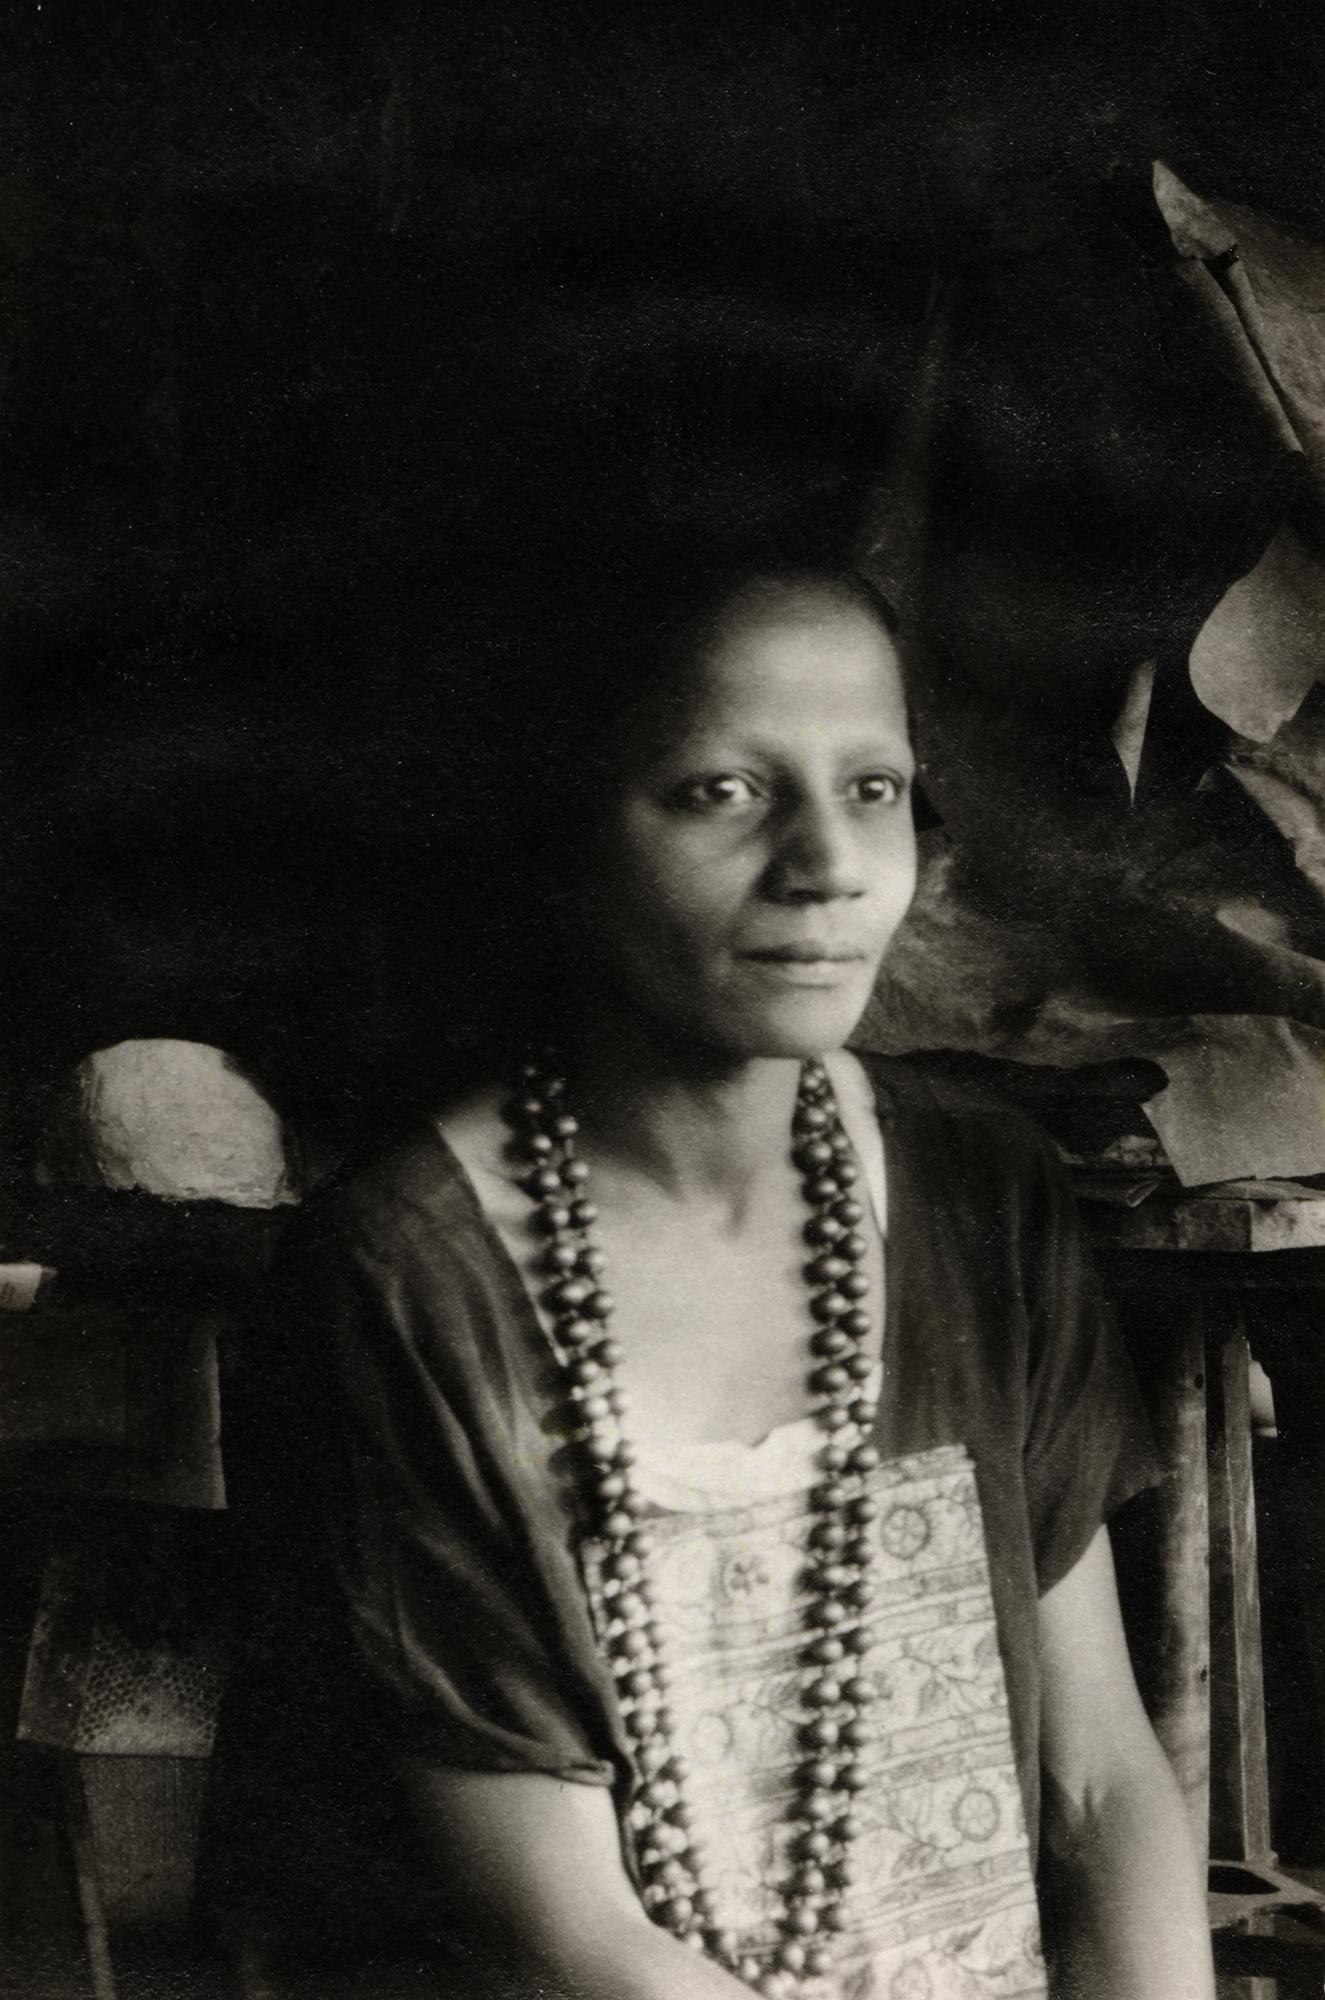 Unknown, Prophet in her Studio, 1938